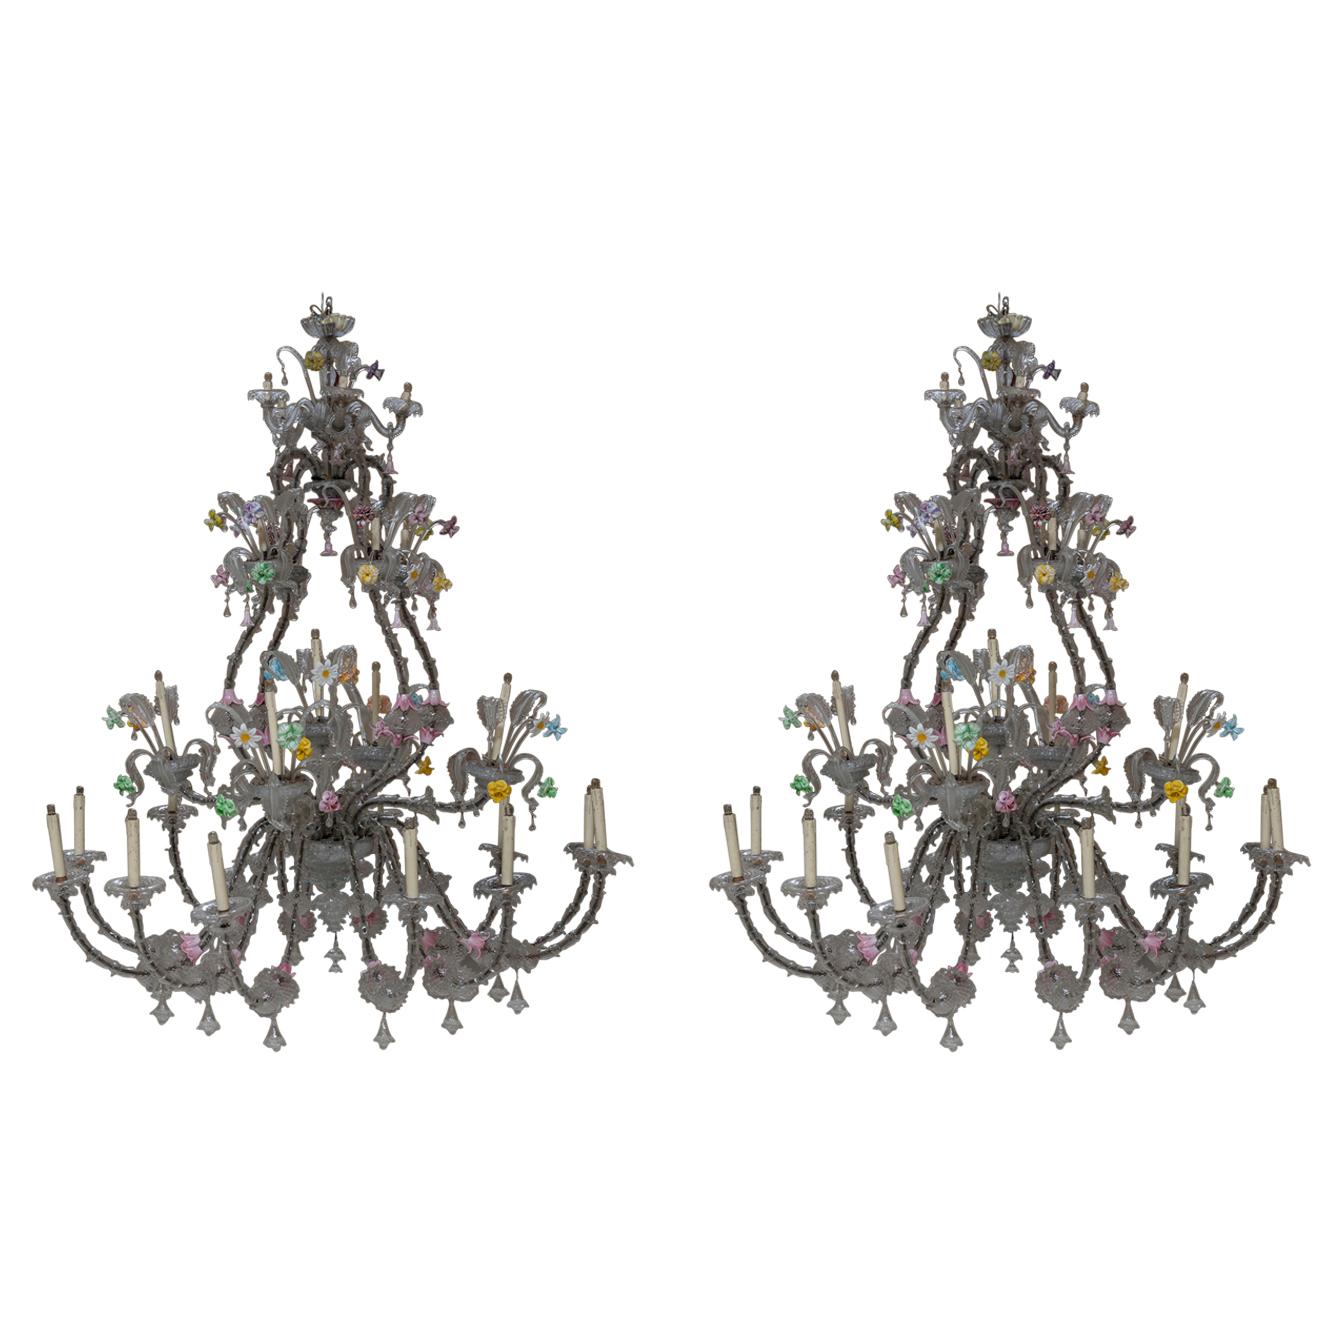 Paar von absoluter Größe und akribisch dekorierten Details Kronleuchter Ca' Rezzonico von Venini.
Die Dimensionen der Kronleuchter sind ebenso unglaublich wie die kostbaren Verzierungen und bunten Glasblumen. 
Jeder Kronleuchter hat 26 Lichter.